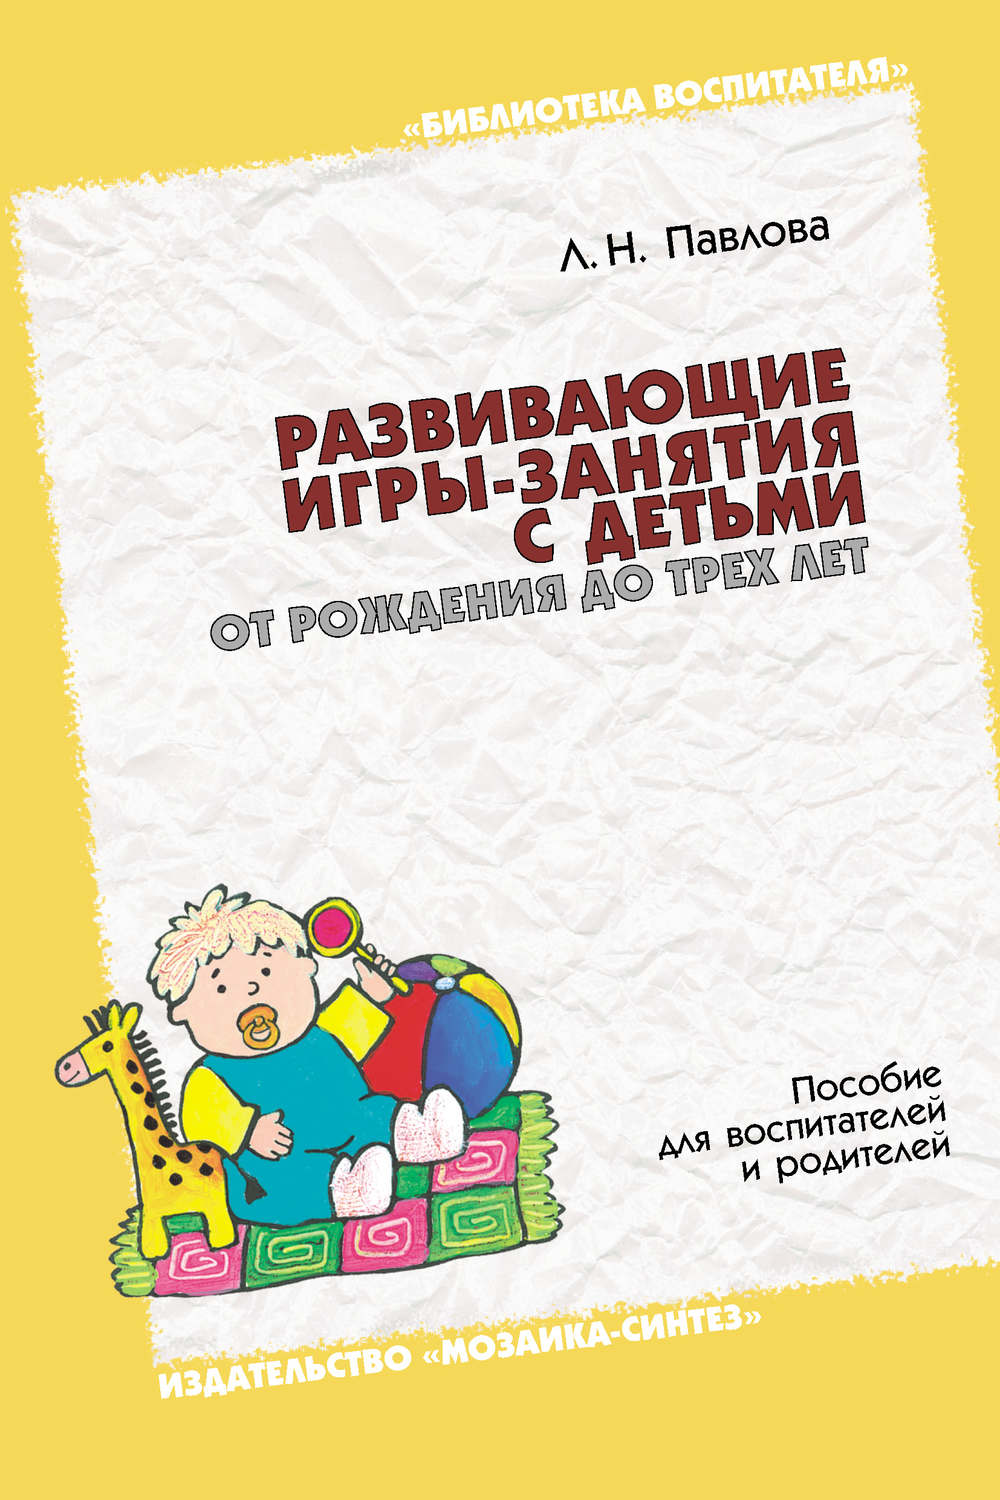 Павлова Любовь Николаевна - «Развивающие игры-занятия с детьми от рождения до трех лет. Пособие для воспитателей и родителей»